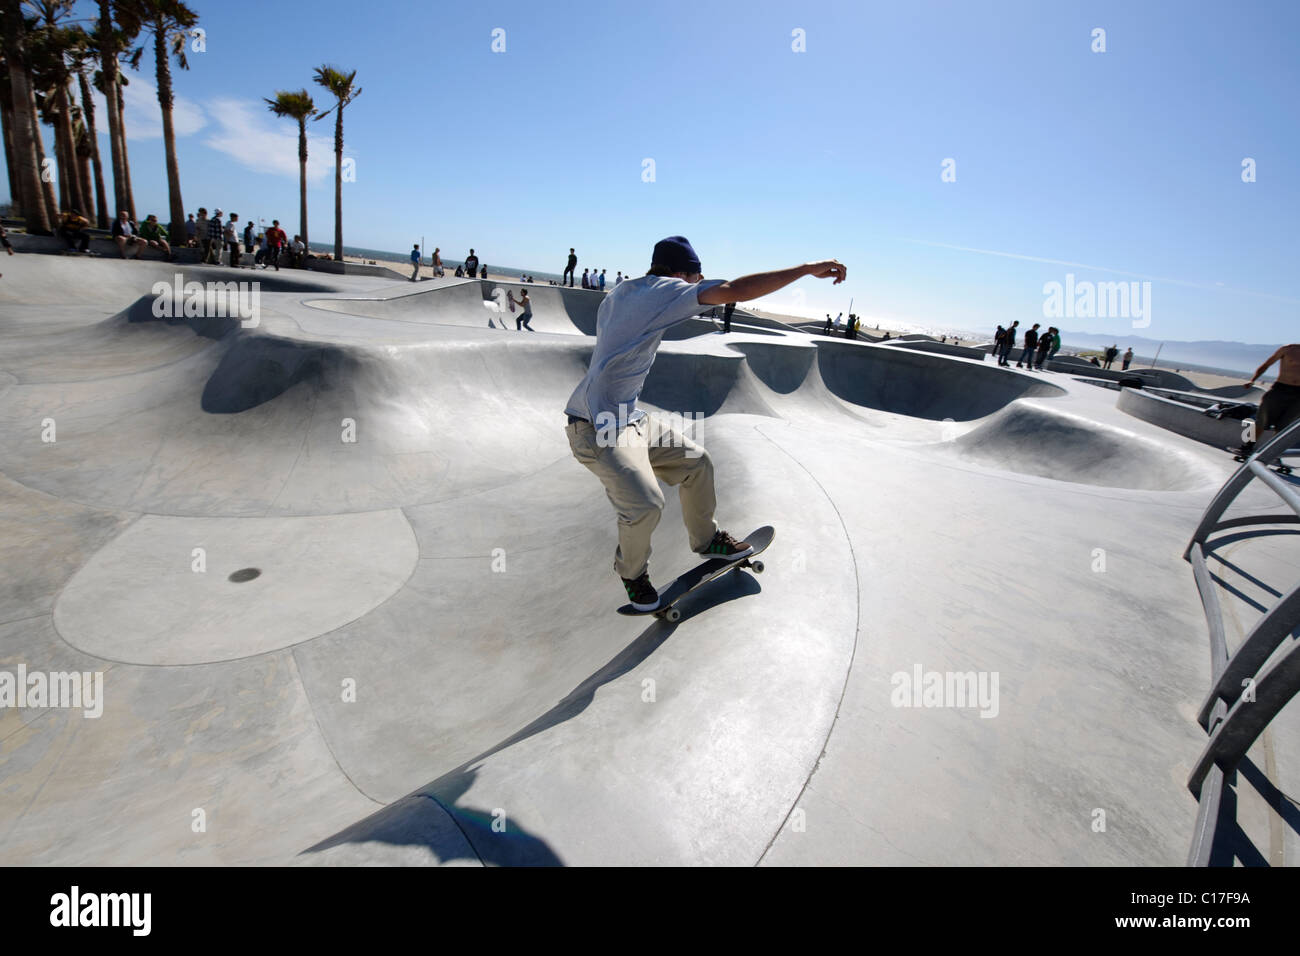 skate boarding in venice beach california skate park Stock Photo